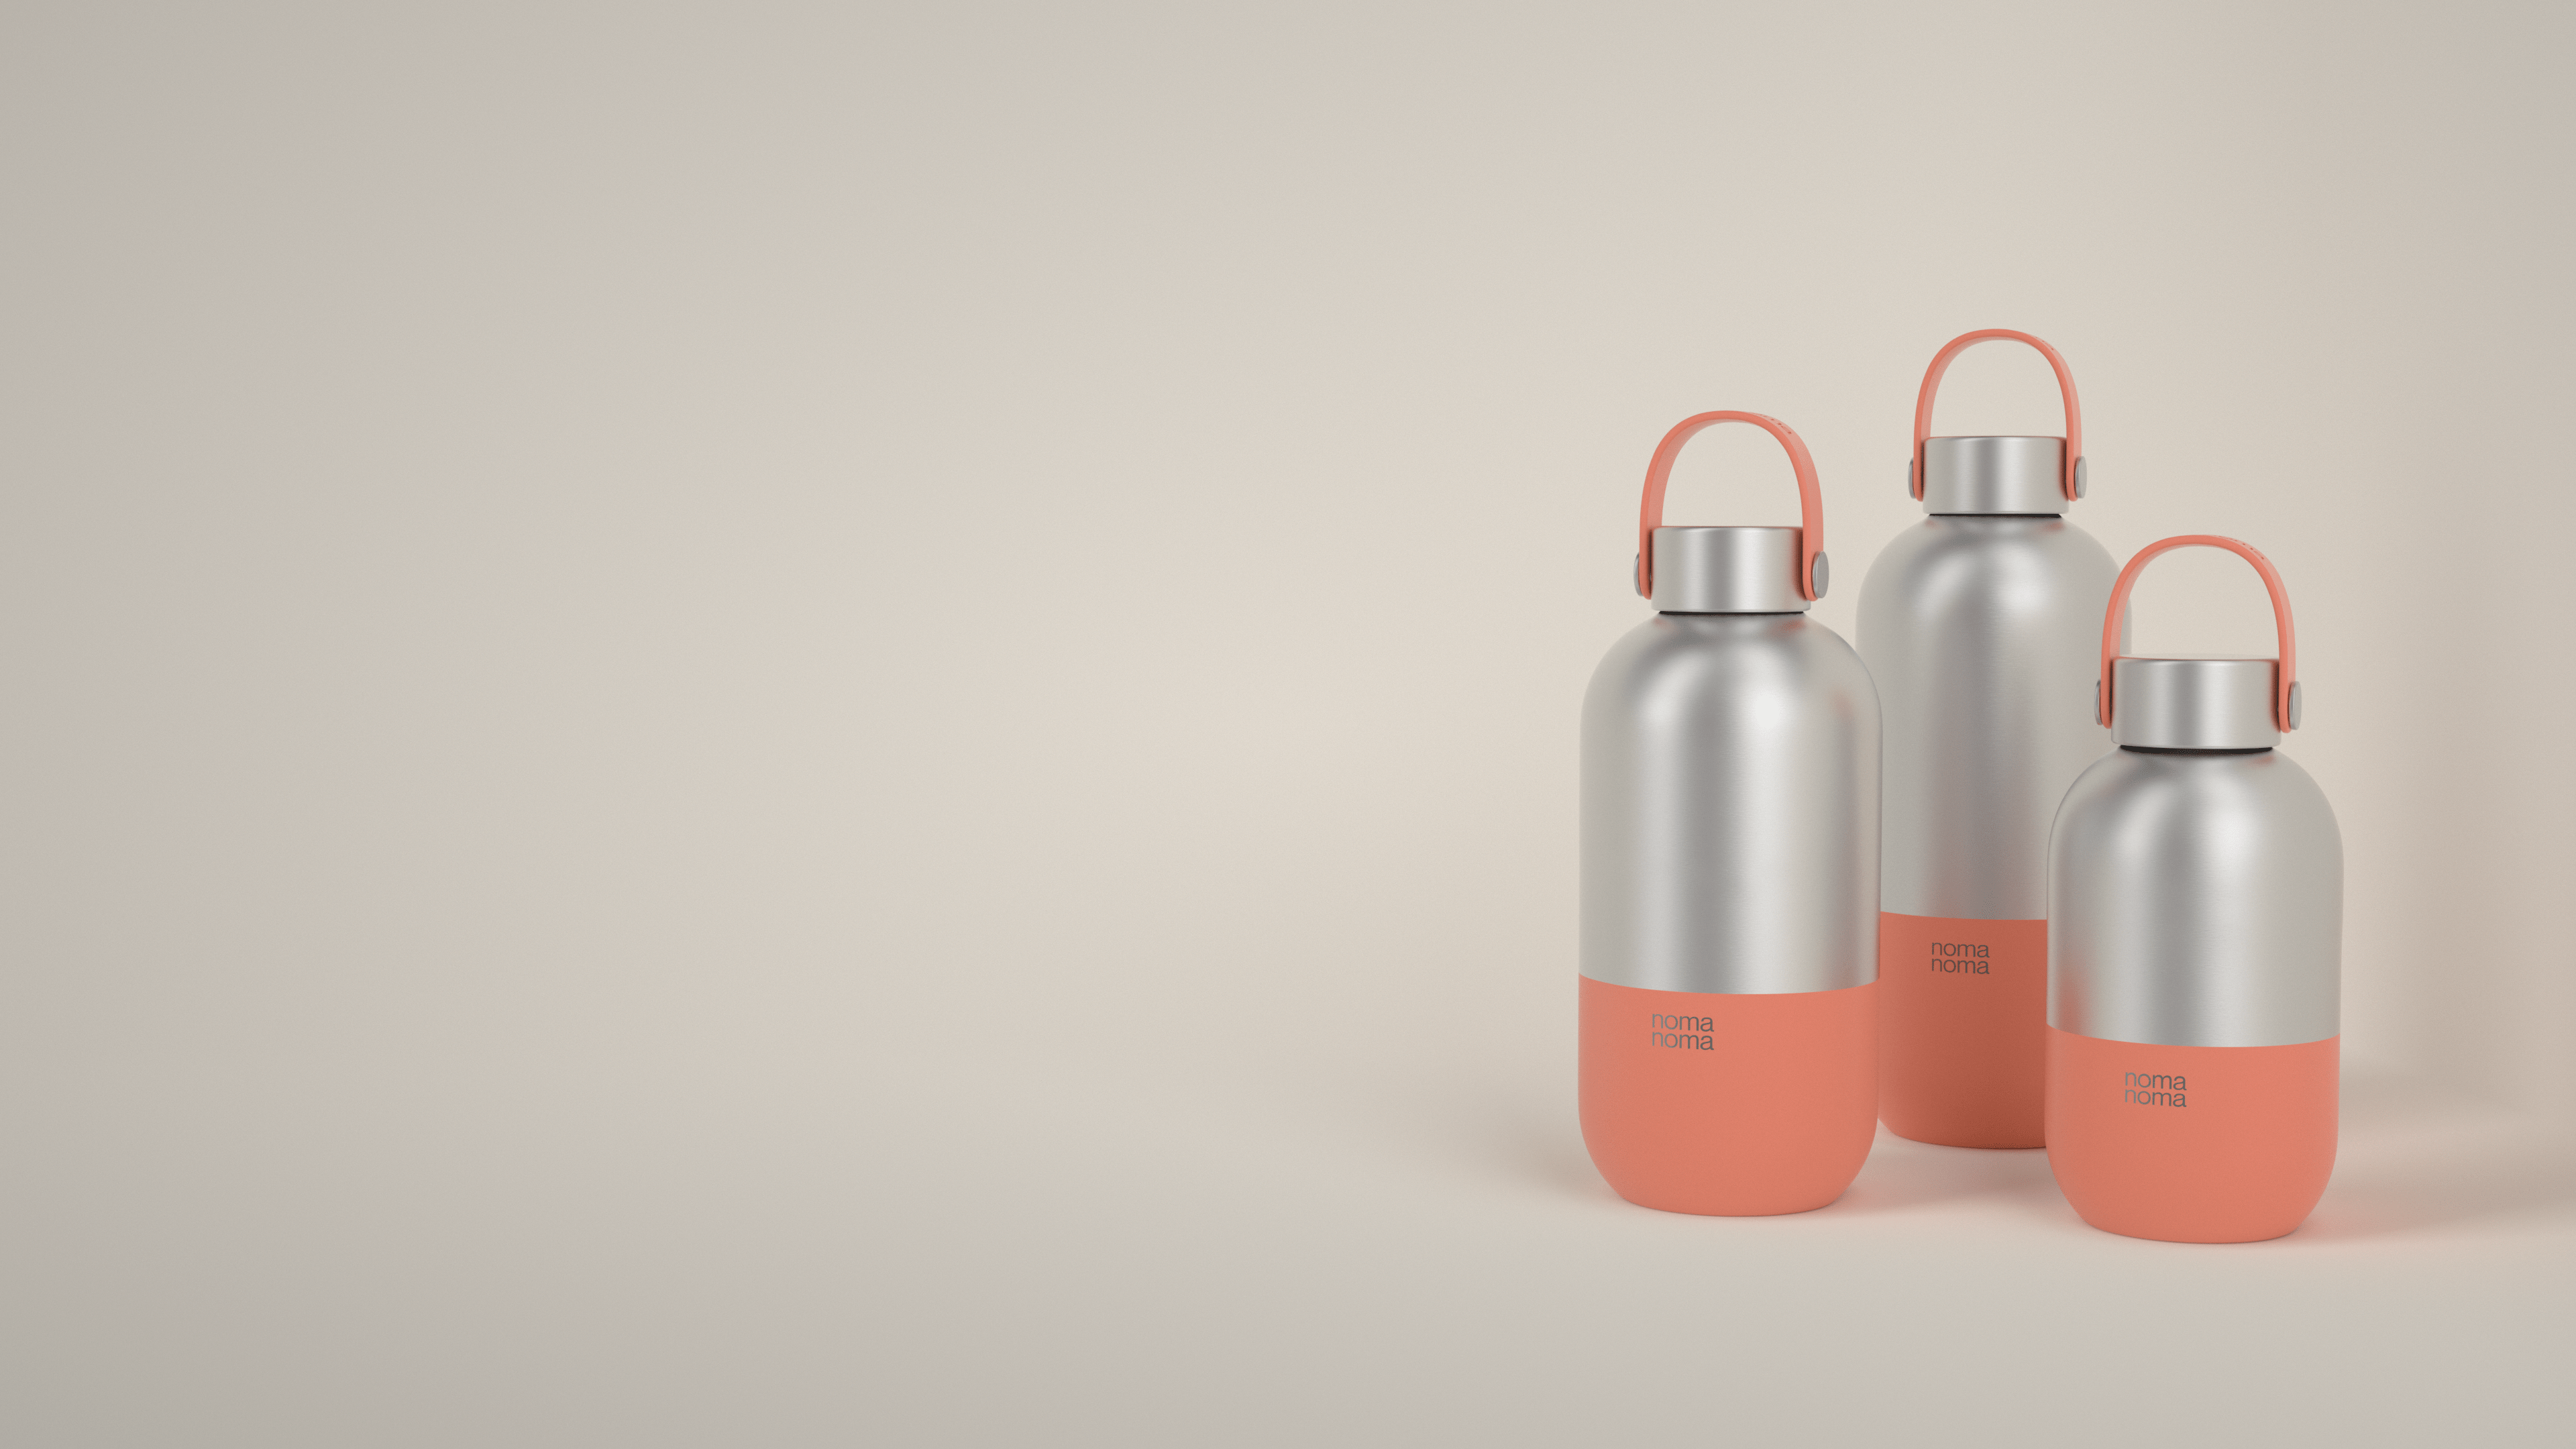 Die orange Trinkflasche von noma noma gibt es in drei praktischen Größen.